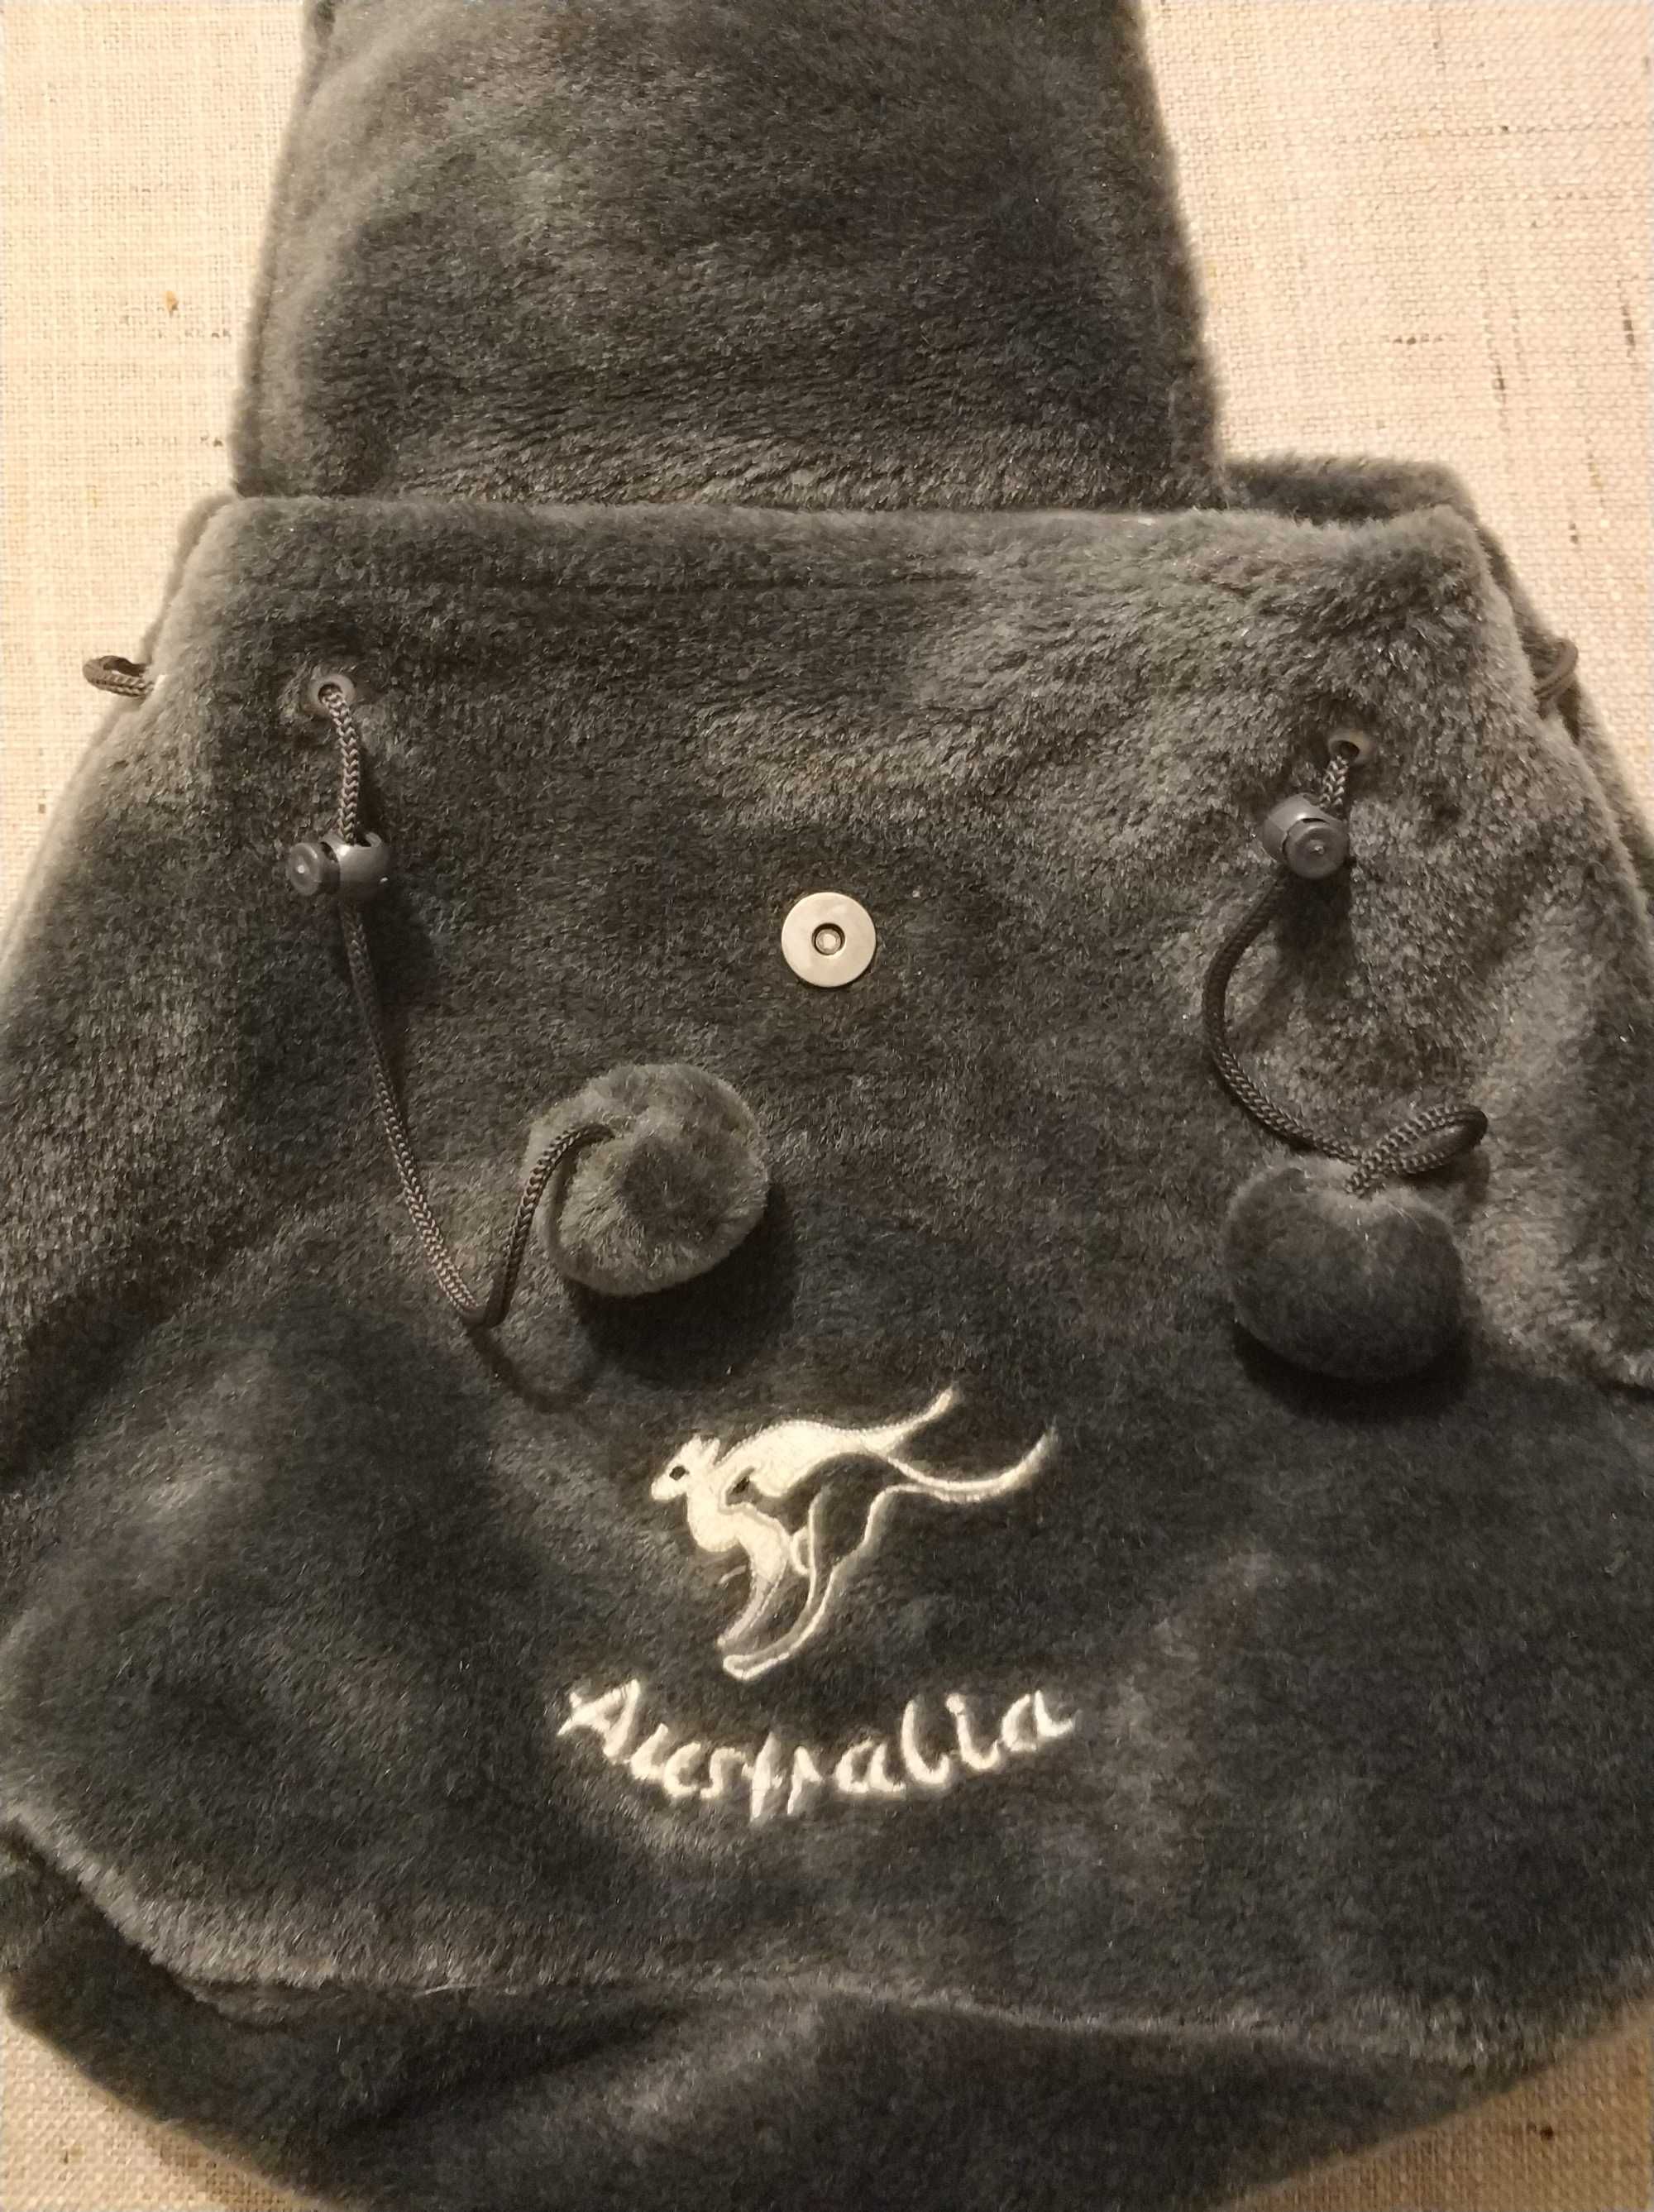 Oryginalny plecak koala z Australii